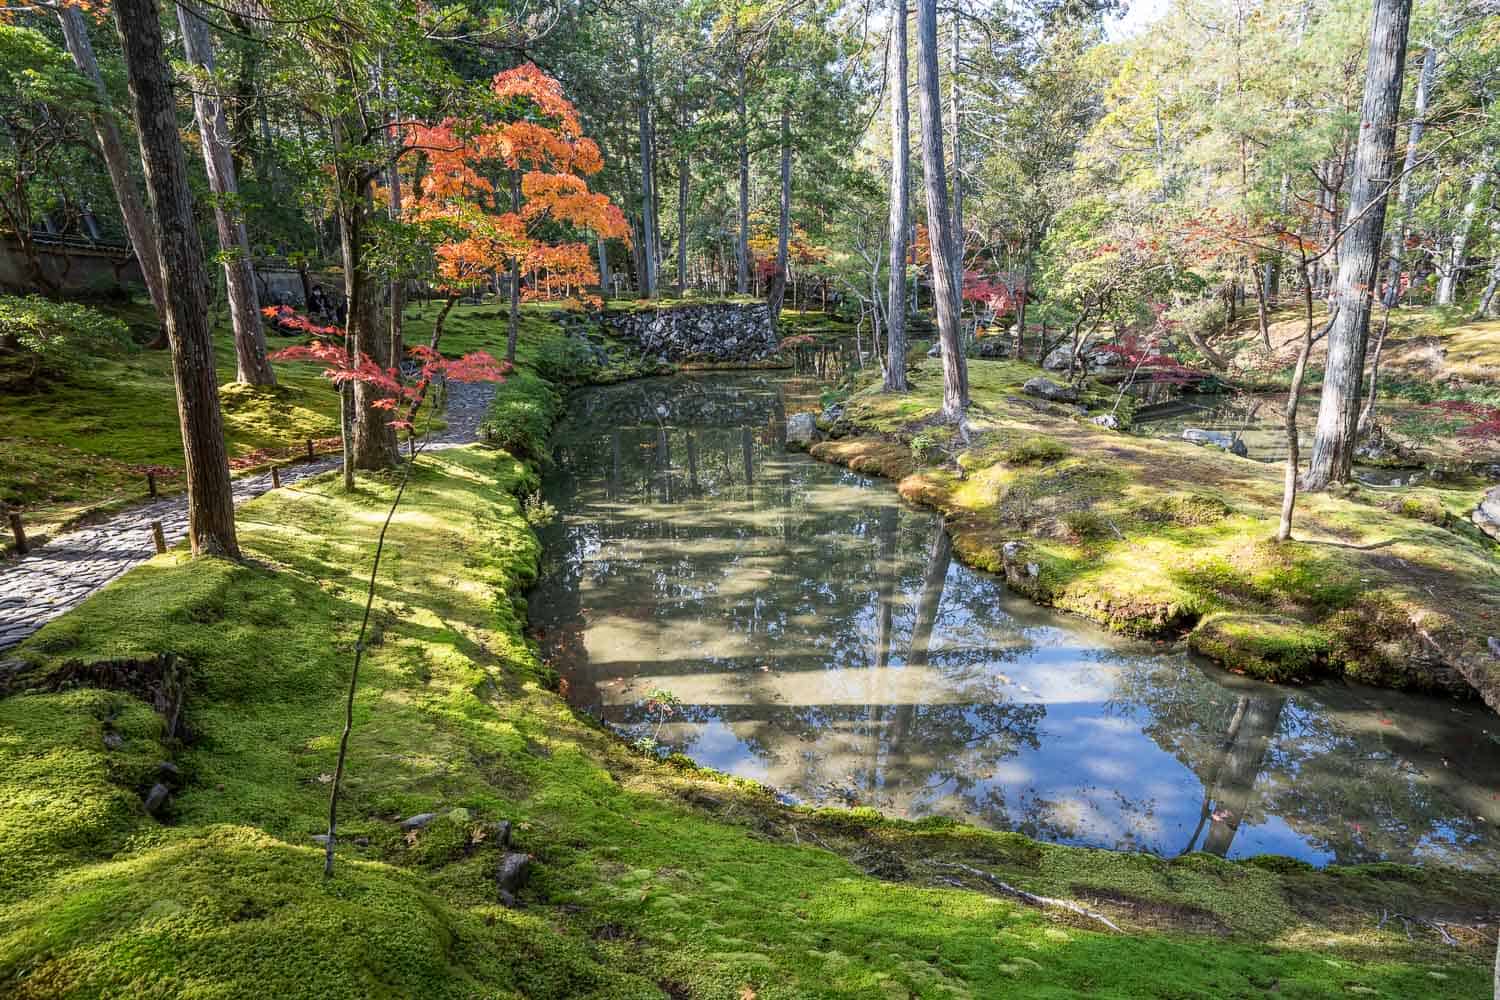 Path around the golden pond in Saihoji Moss Temple Garden, Kyoto, Japan